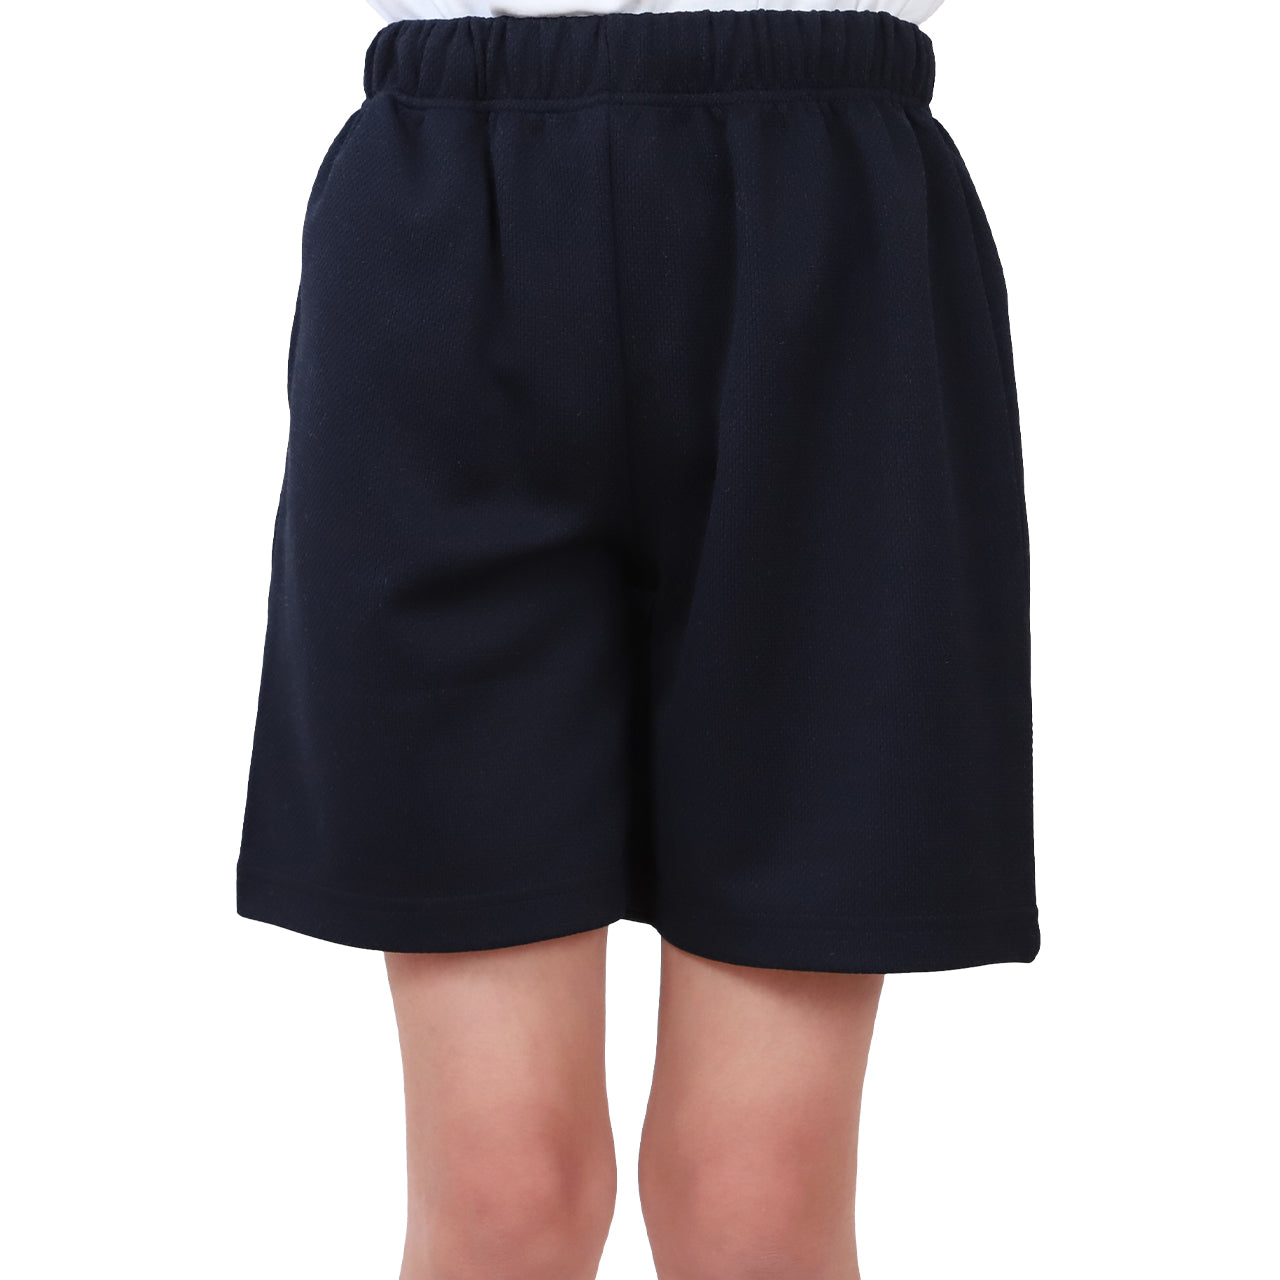 体操ズボン クォーターパンツ S～3L (体操服 半ズボン 短パン 大きいサイズ ゆったり 小学生 小学校 男子 女子 スクール 子供 子ども キッズ)